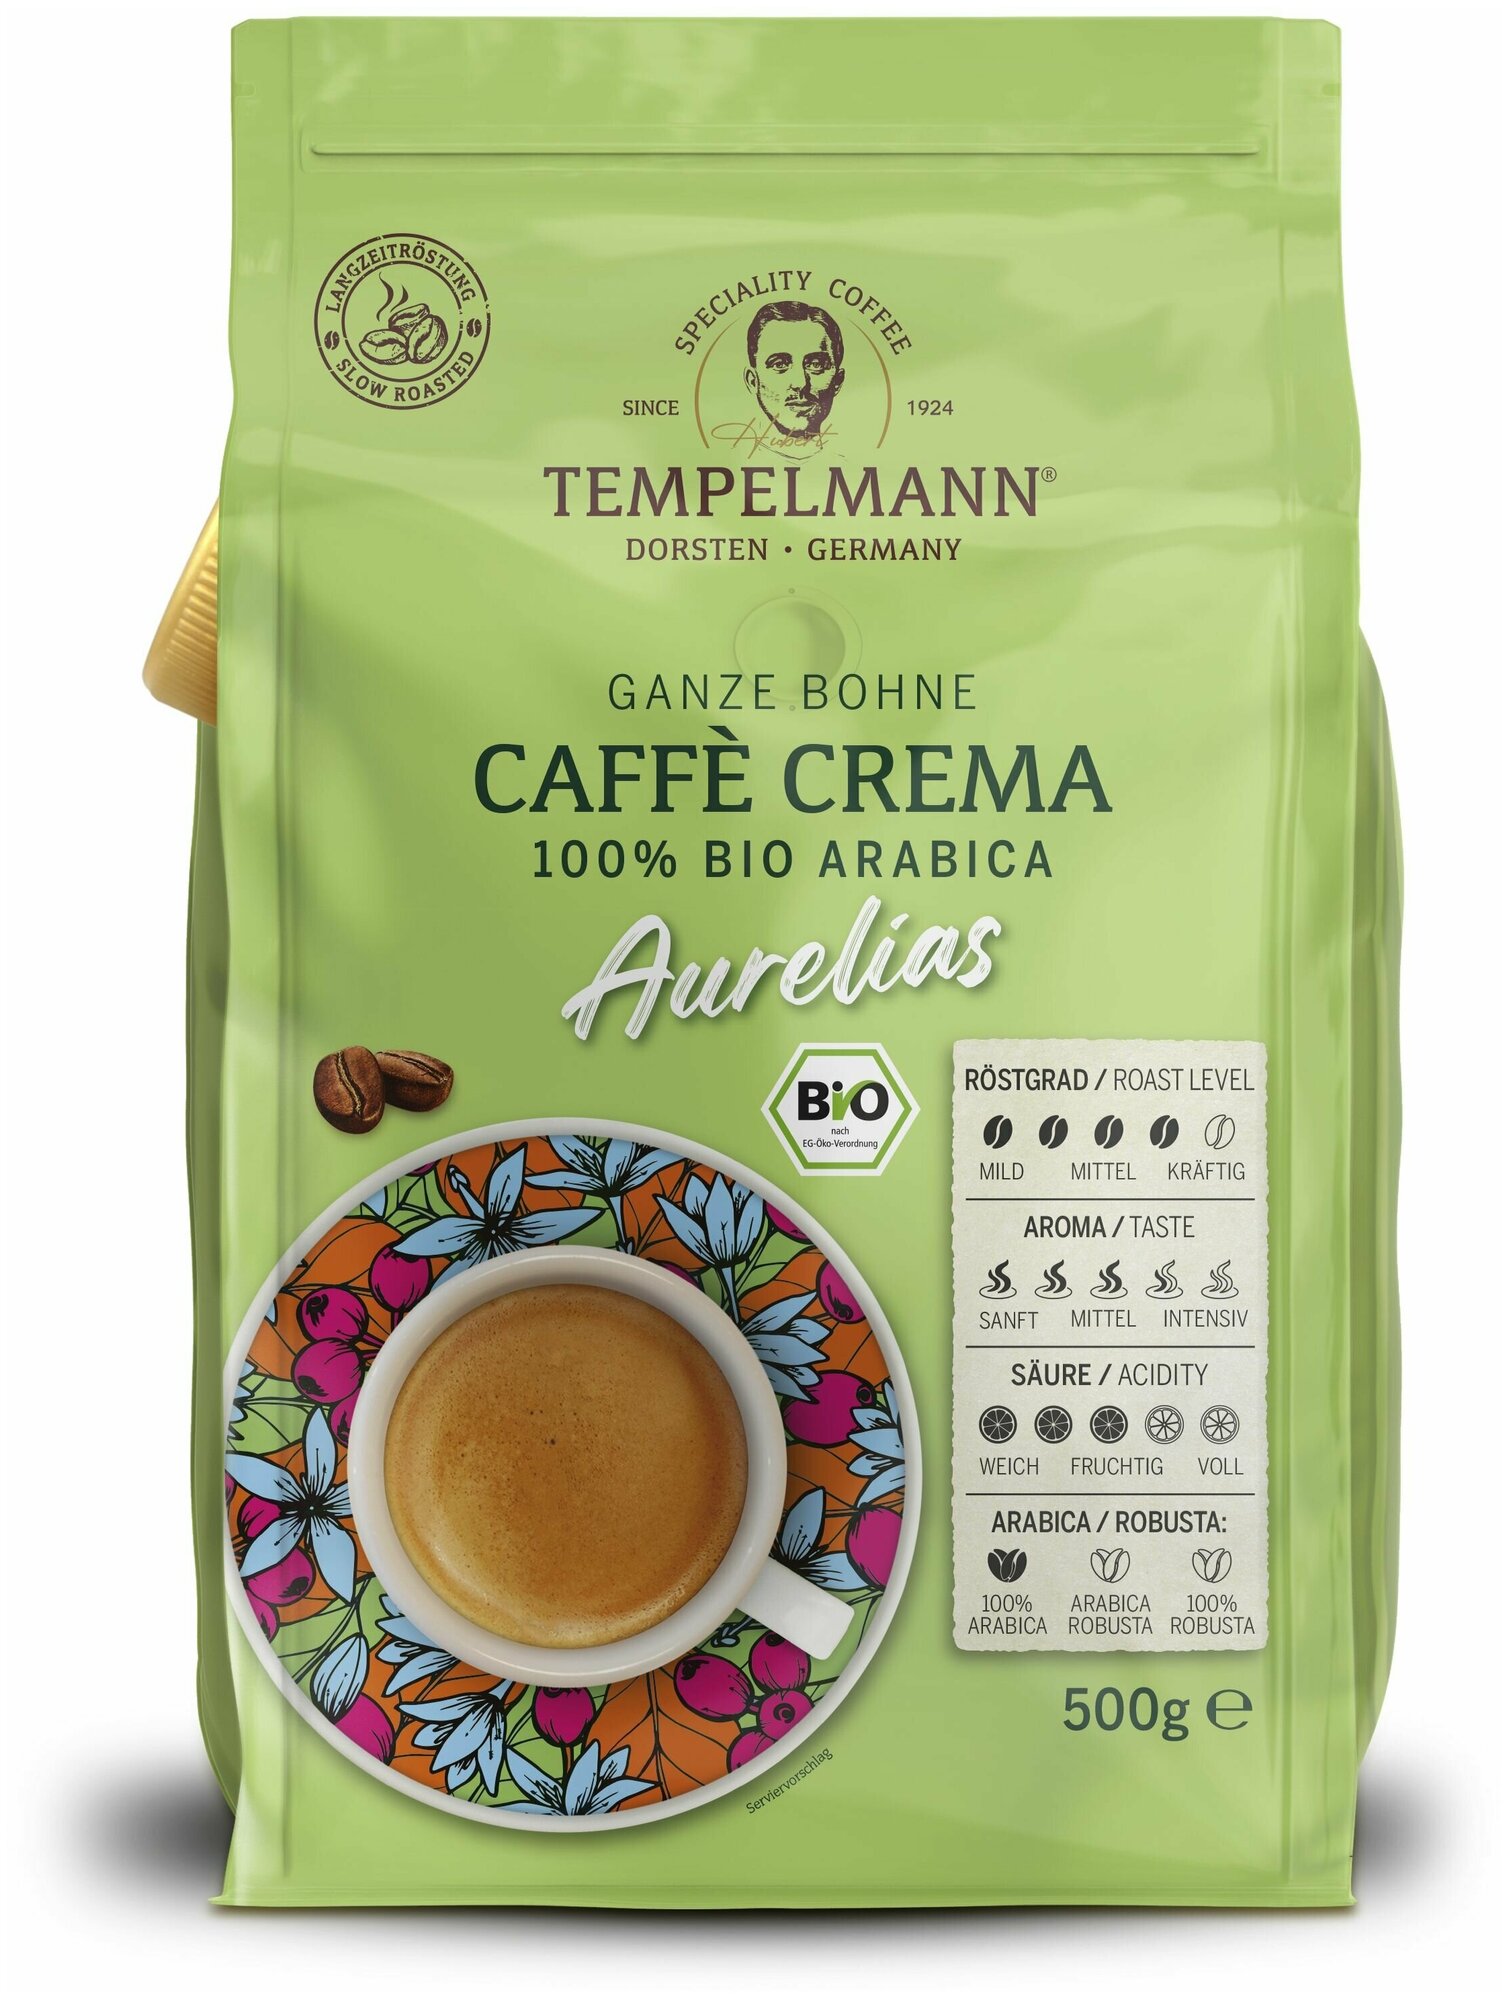 Кофе в зернах, Tempelmann Caffe Crema Aurelias, арабика, 500 гр. Германия